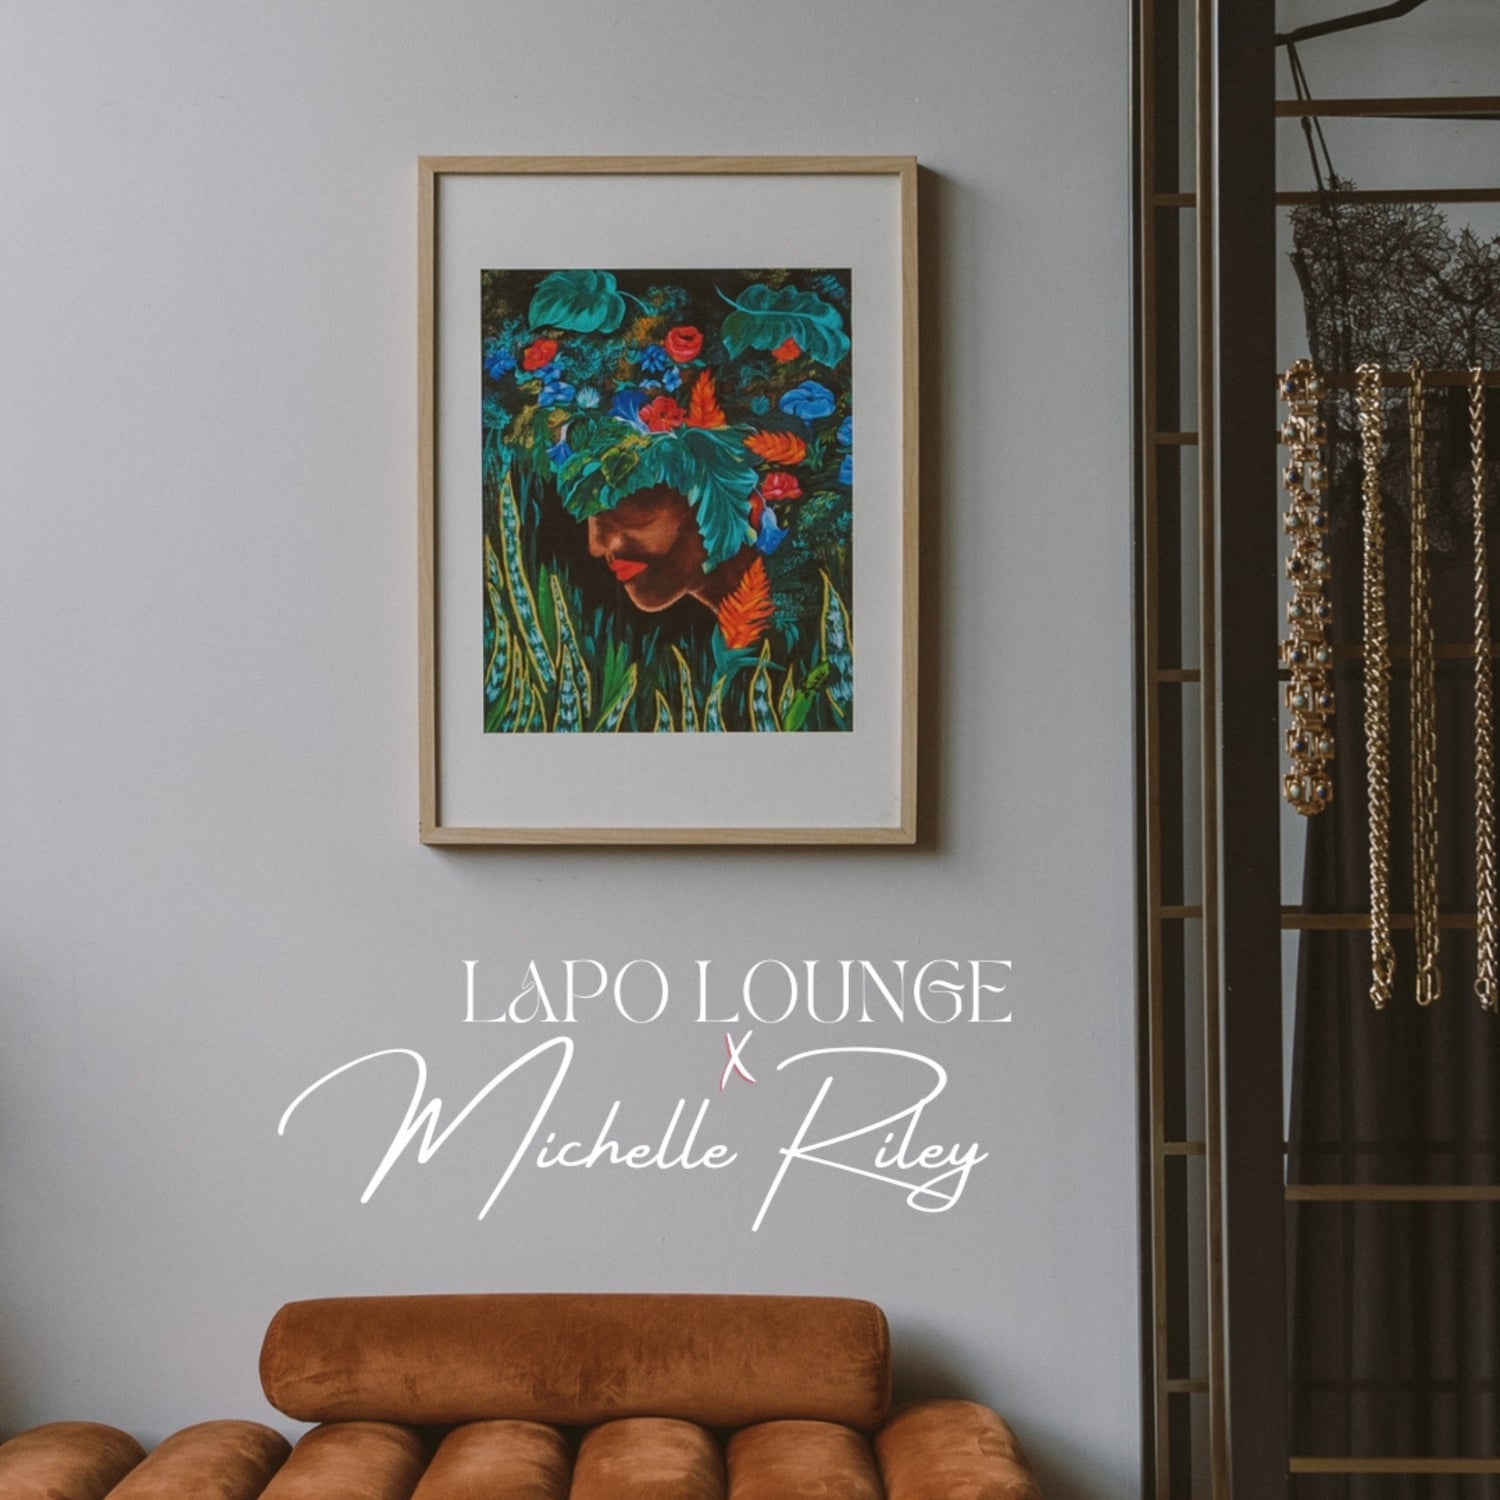 Lapo Lounge x Michelle Riley "Jezebel" Art Prints